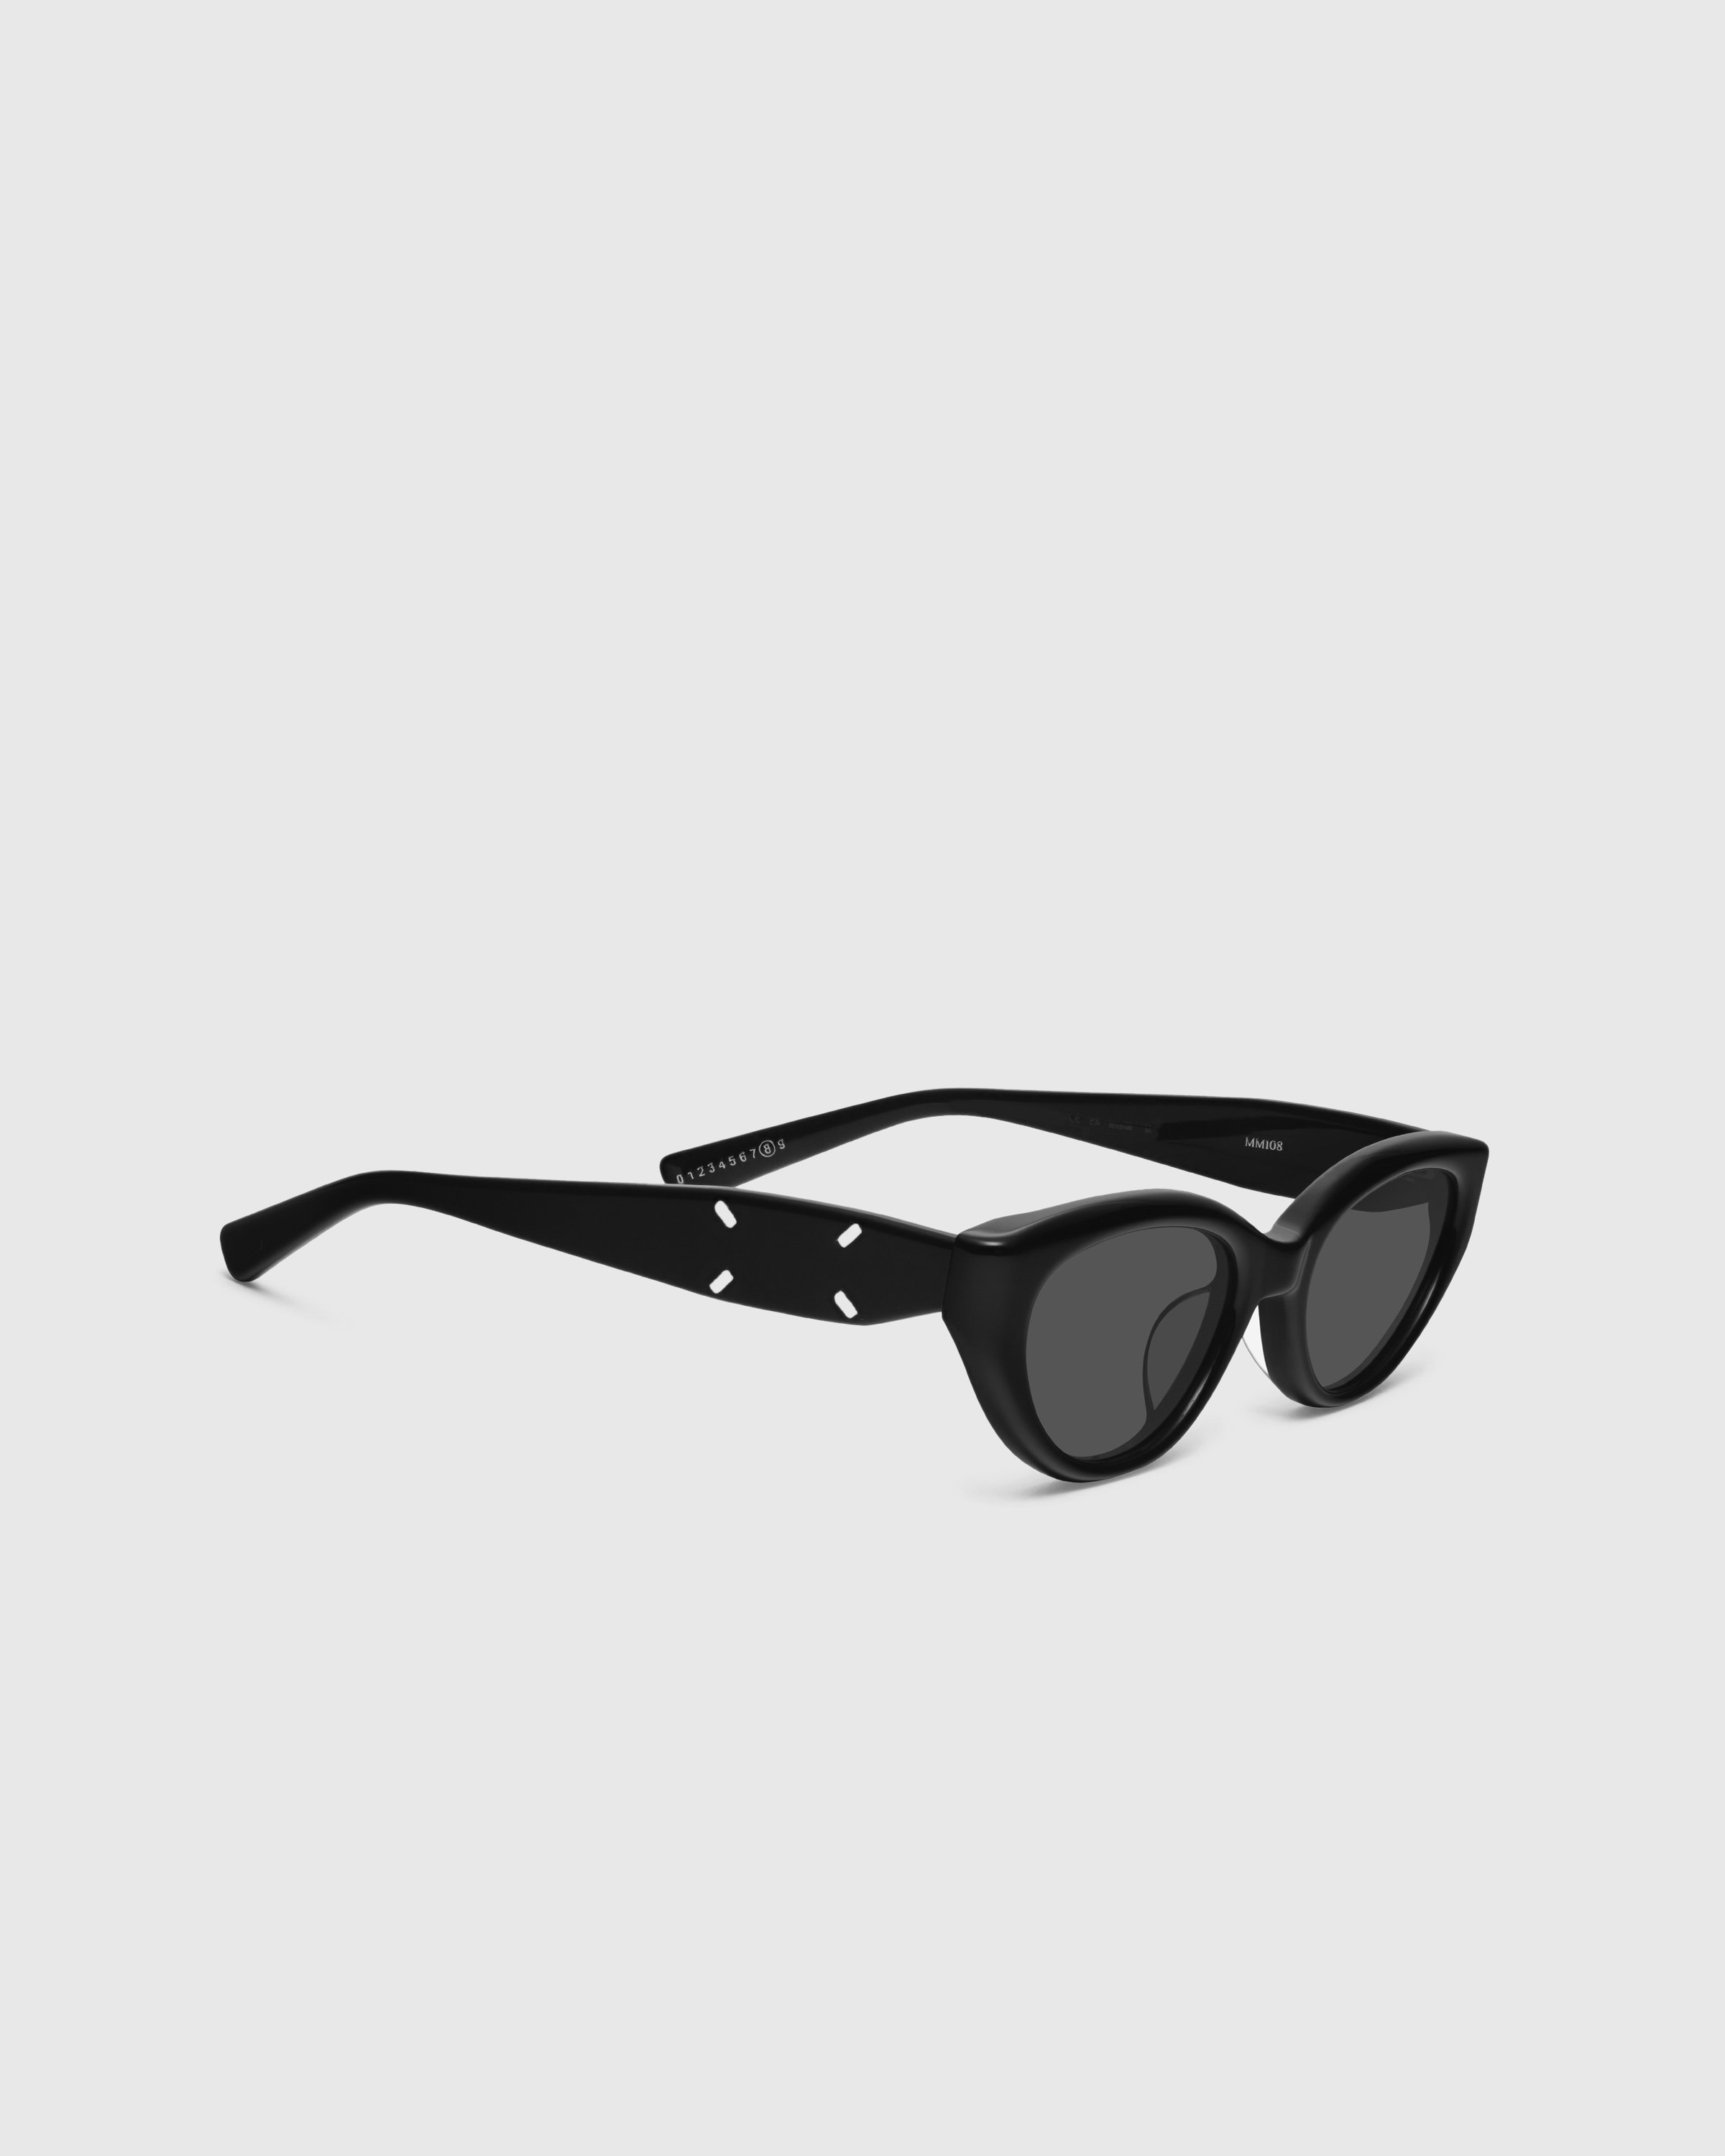 Maison Margiela x Gentle Monster - Sunglasses MM108-01 - Accessories - Black - Image 2